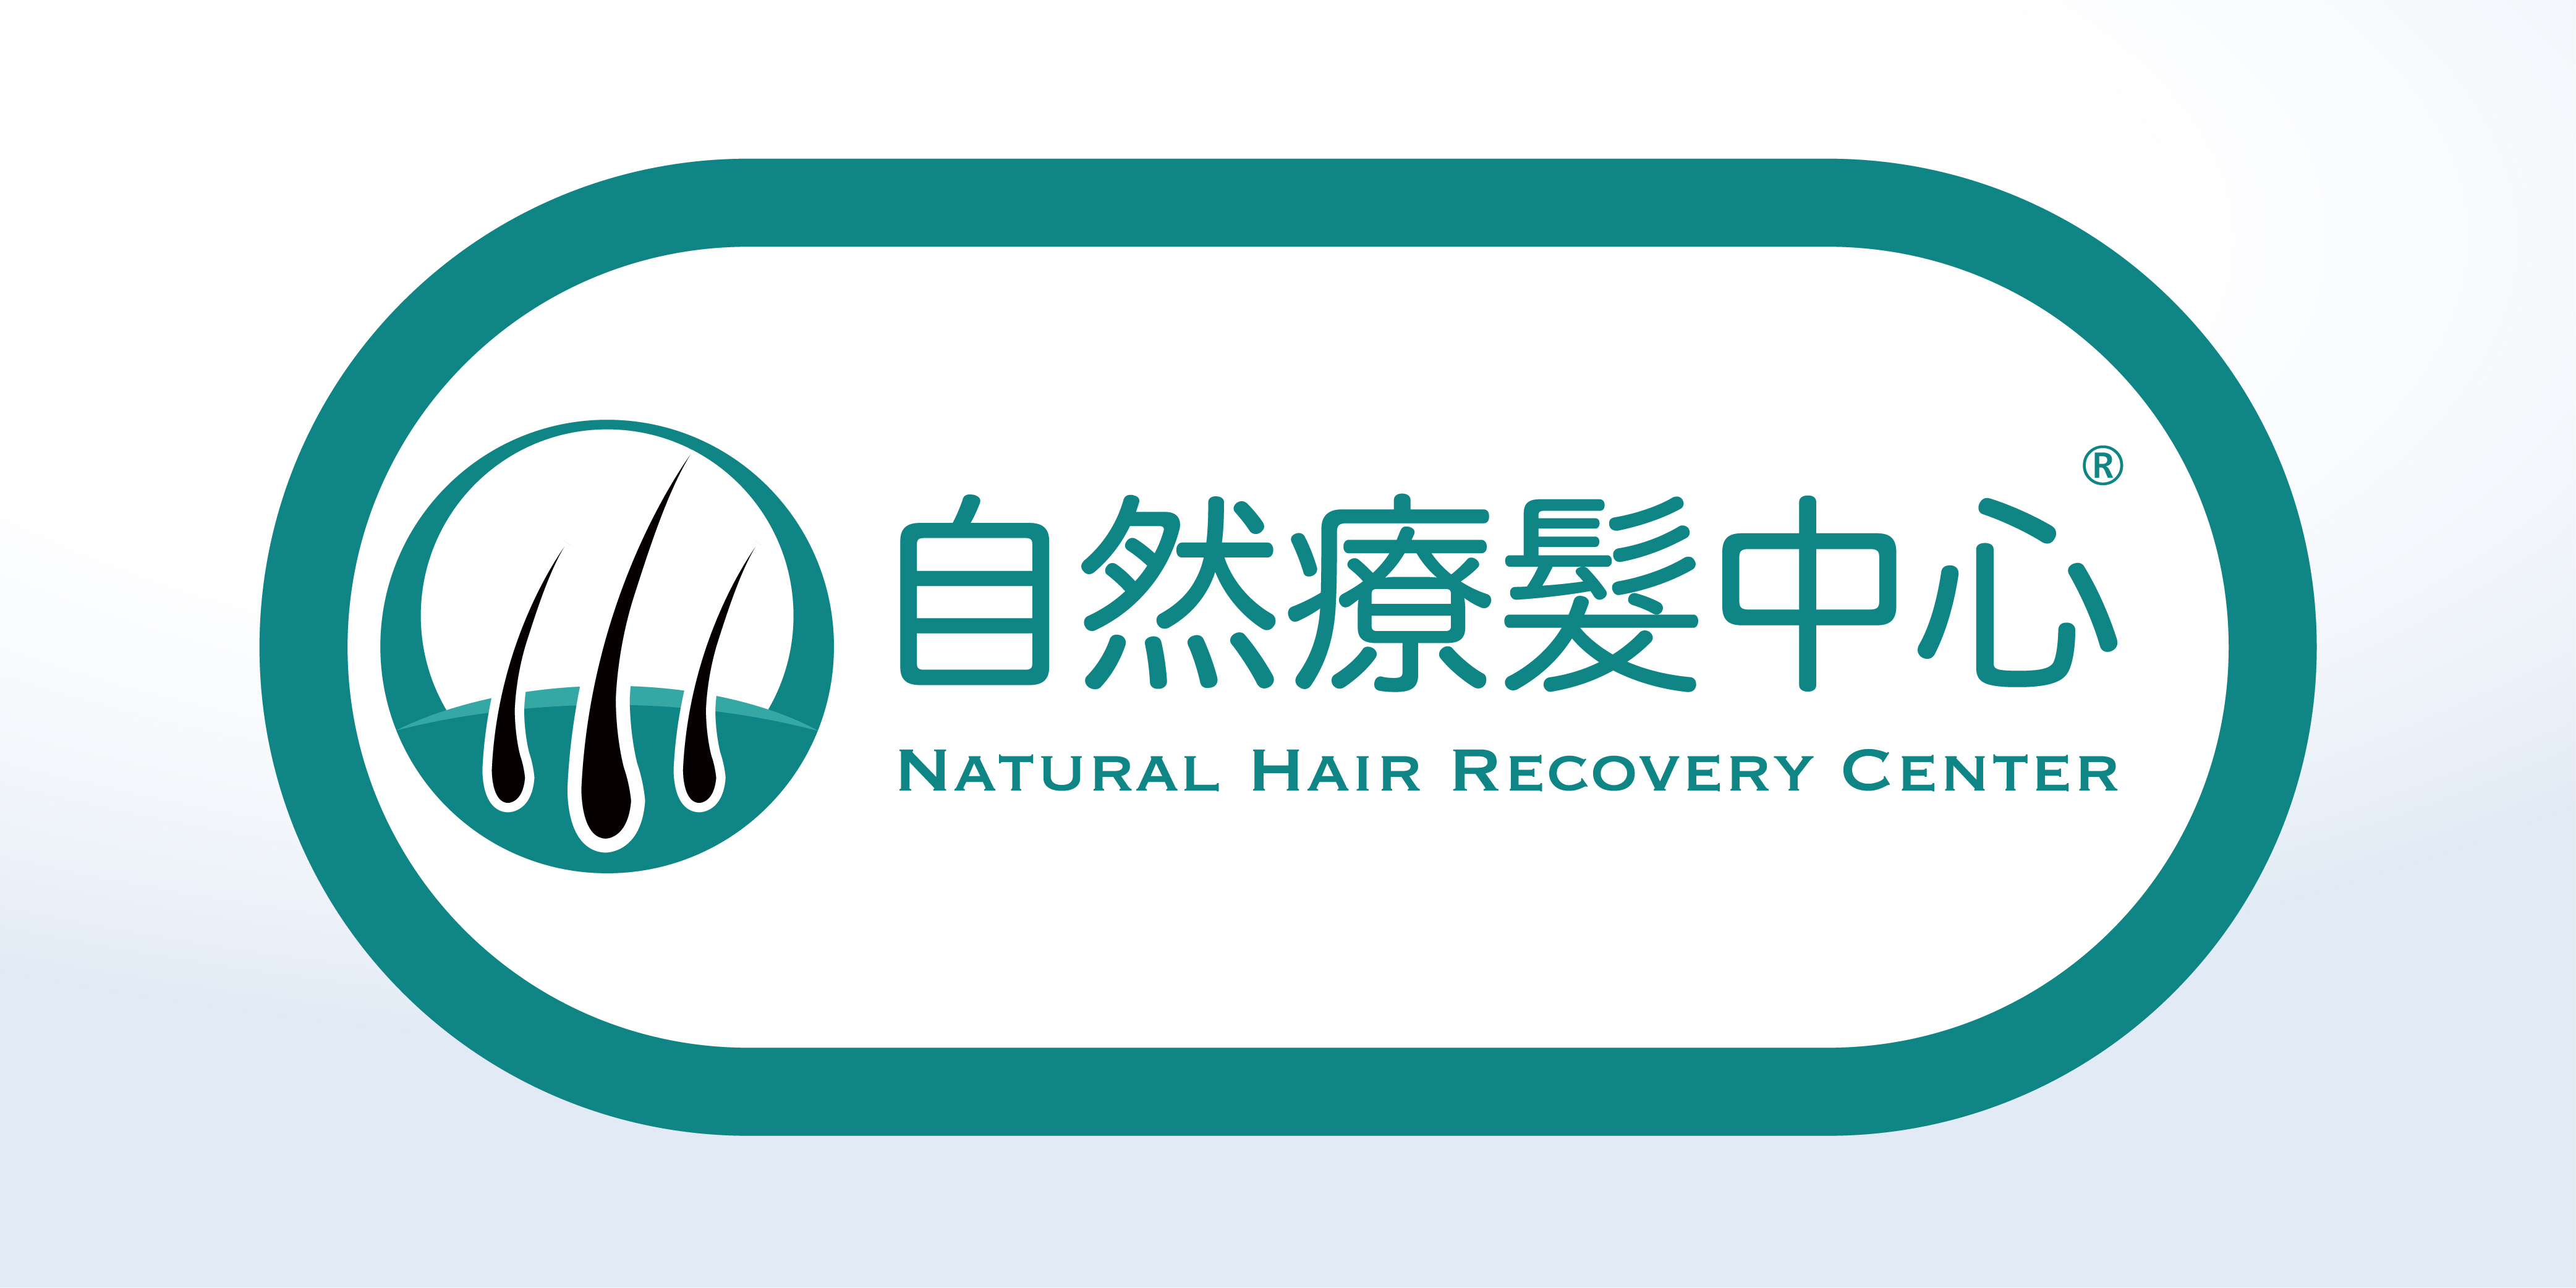 髮型屋: 自然療髮中心 Natural Hair Recovery Center ®